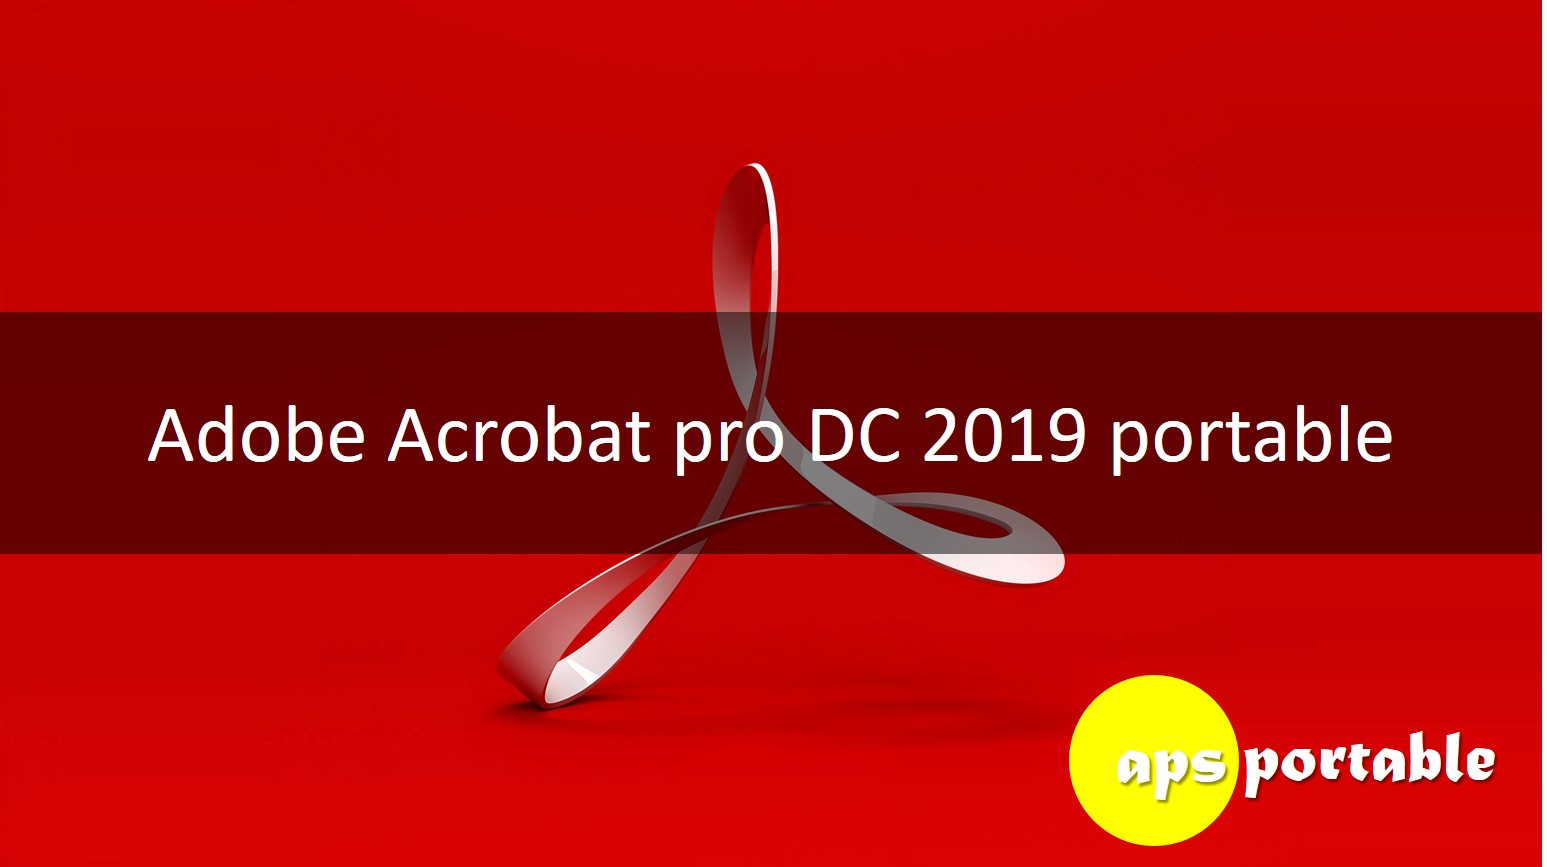 Adobe Acrobat pro DC 2019 portable